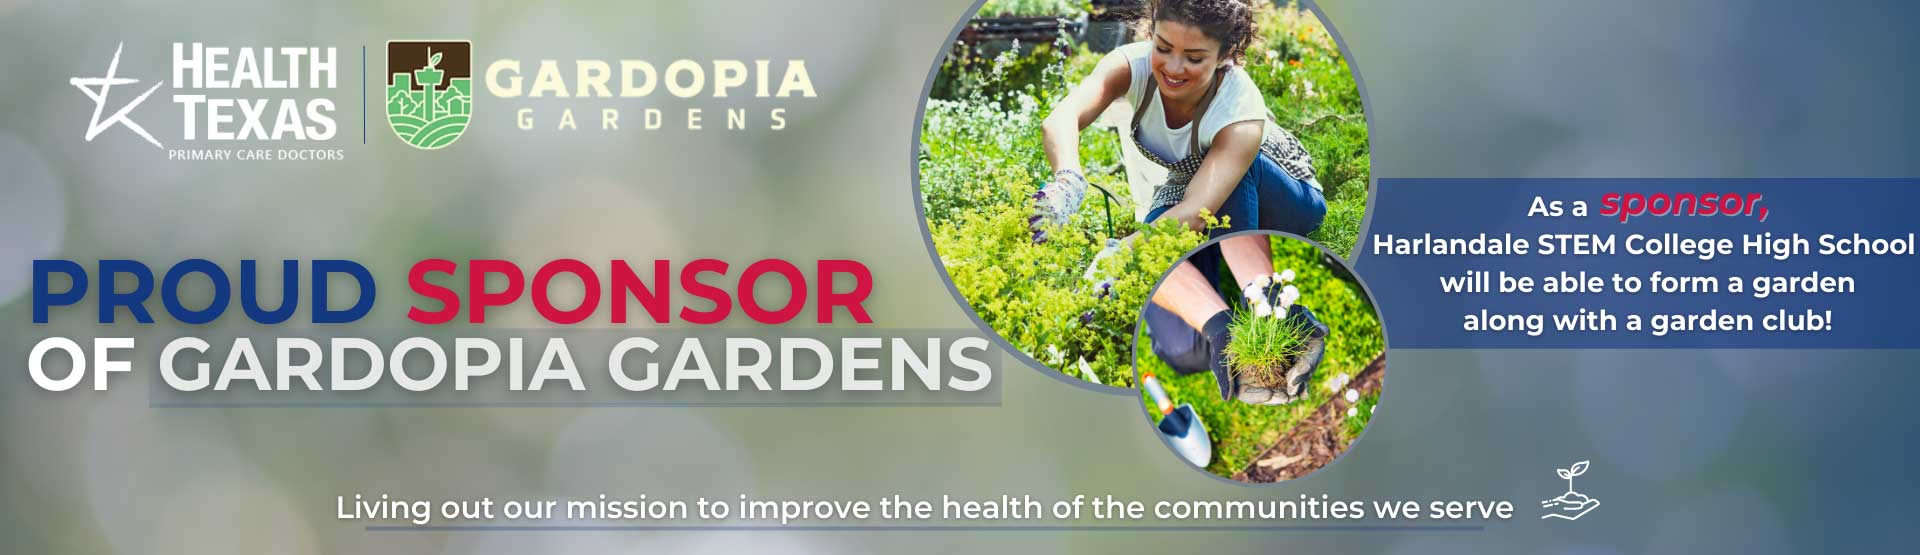 proud sponsor of Gardopia gardends